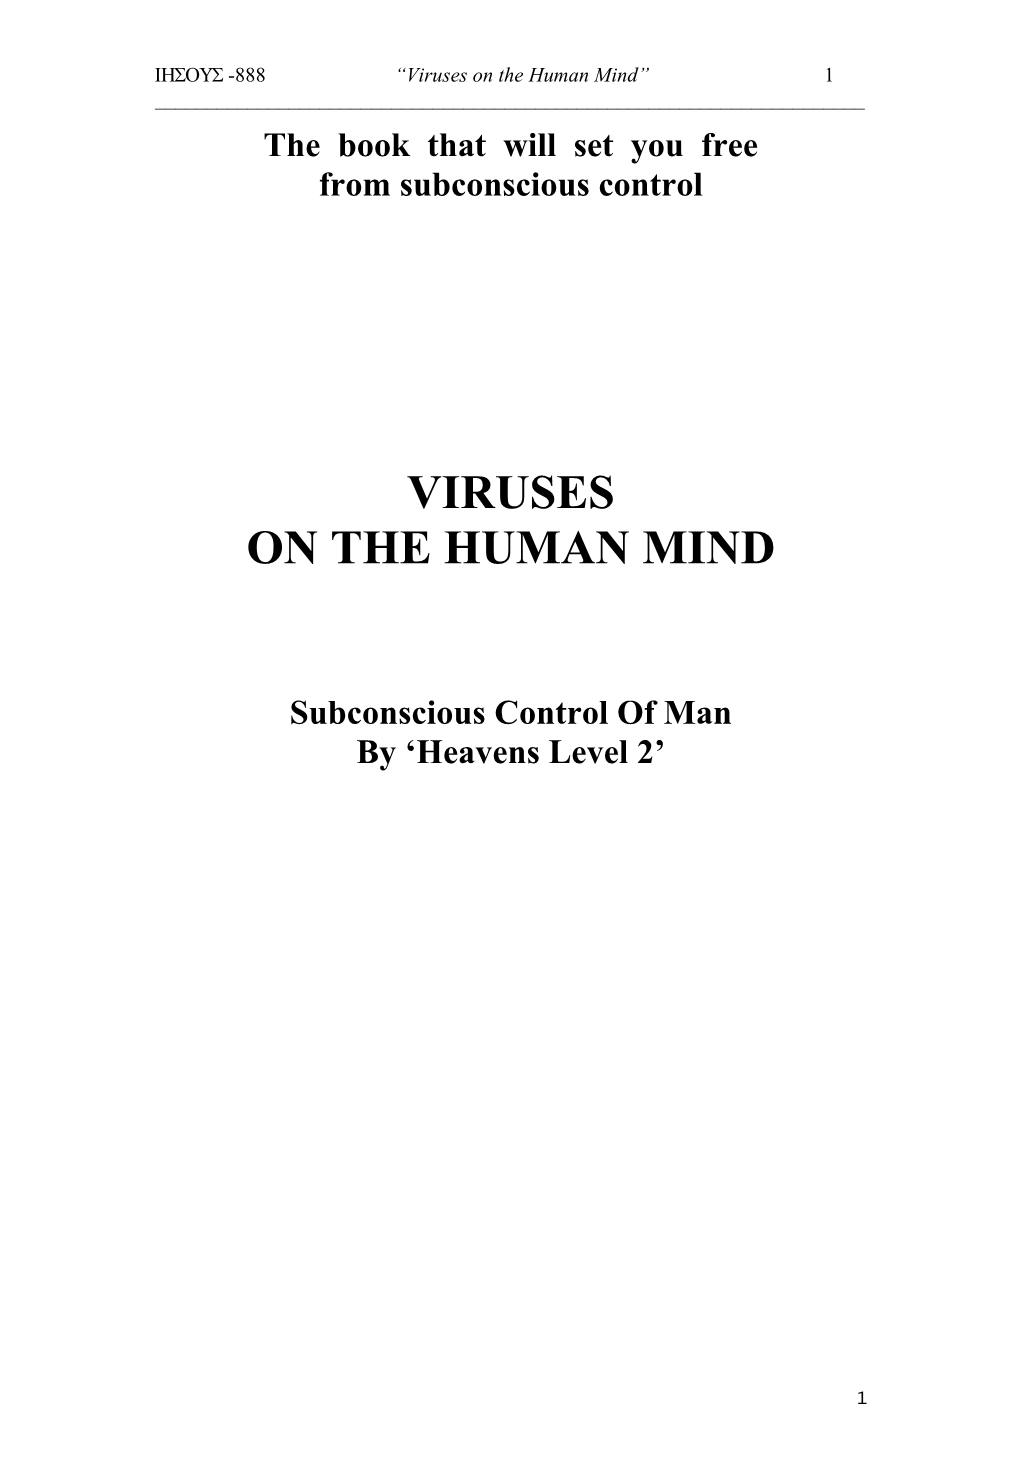 Viruses on the Human Mind